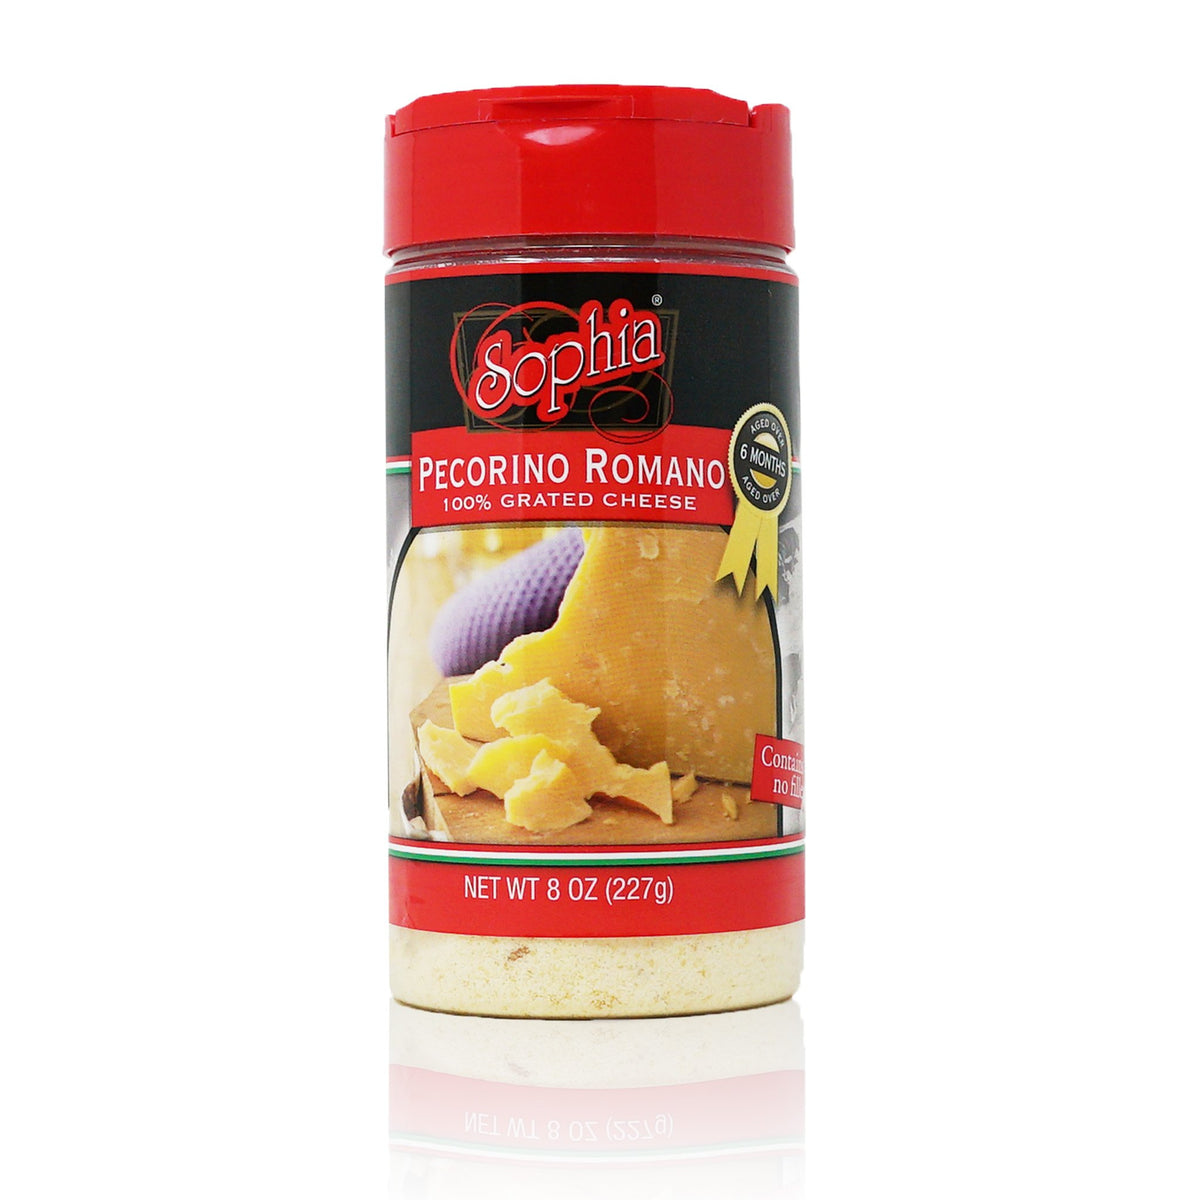 Sophia Cheese Product Shaker - Pecorino Romano